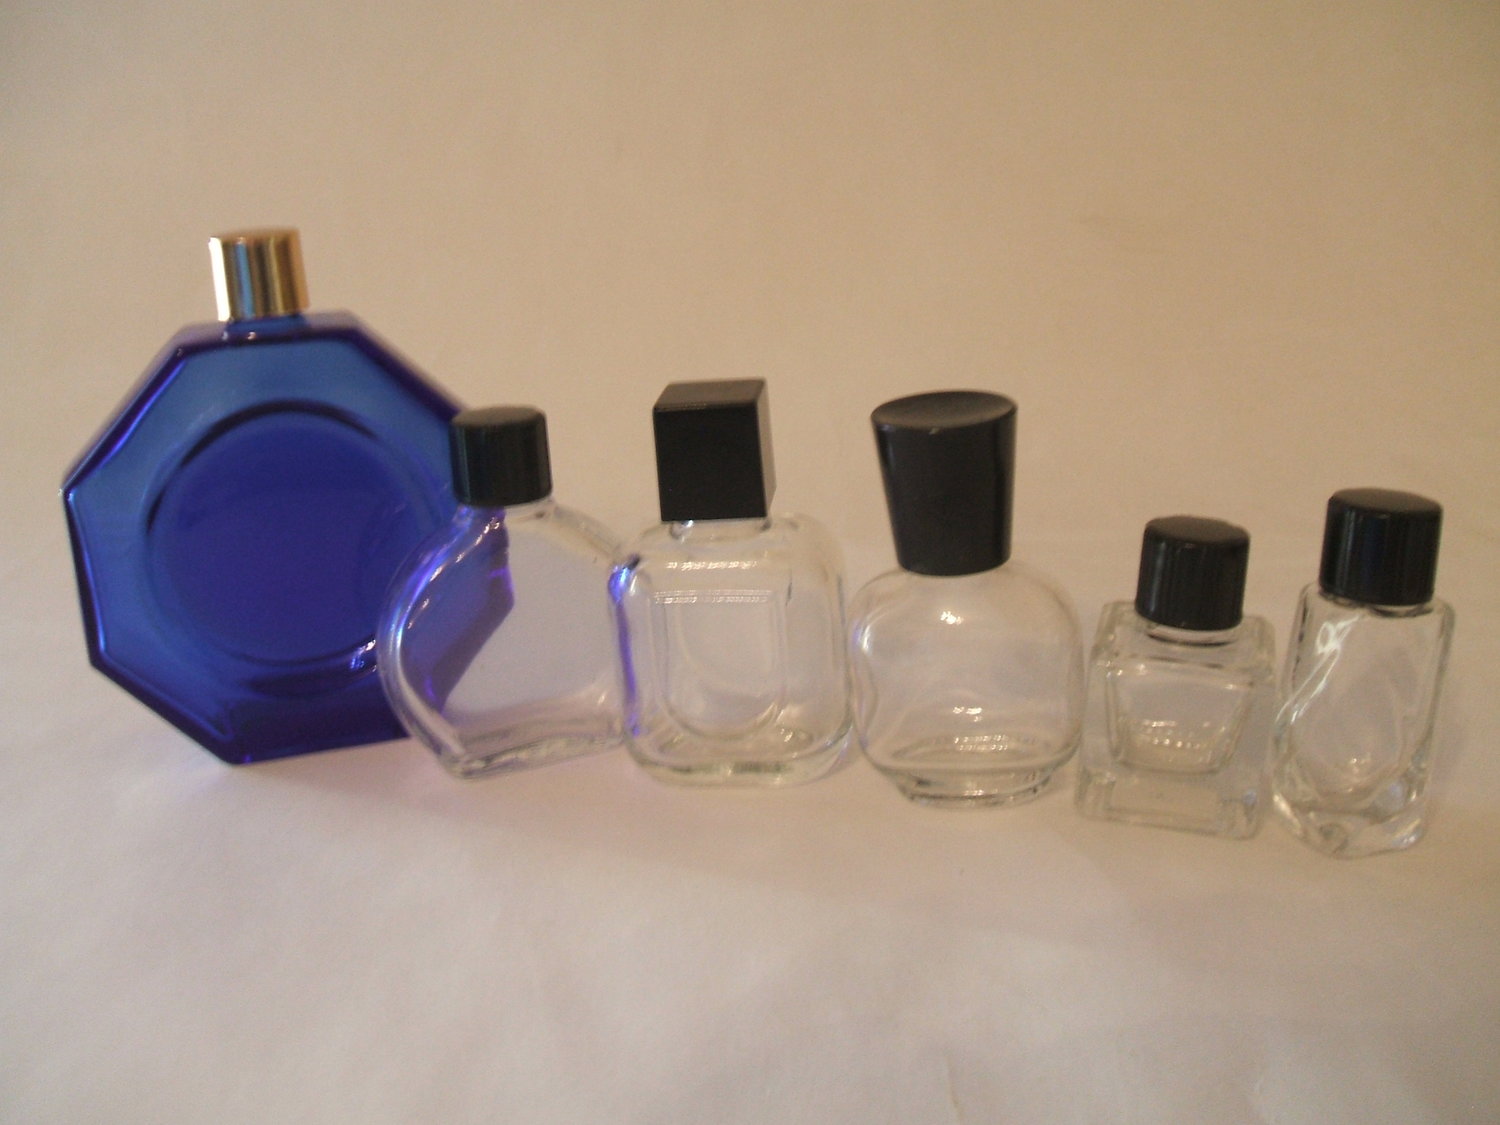 Wholesale Glass Perfume Bottles Bottles